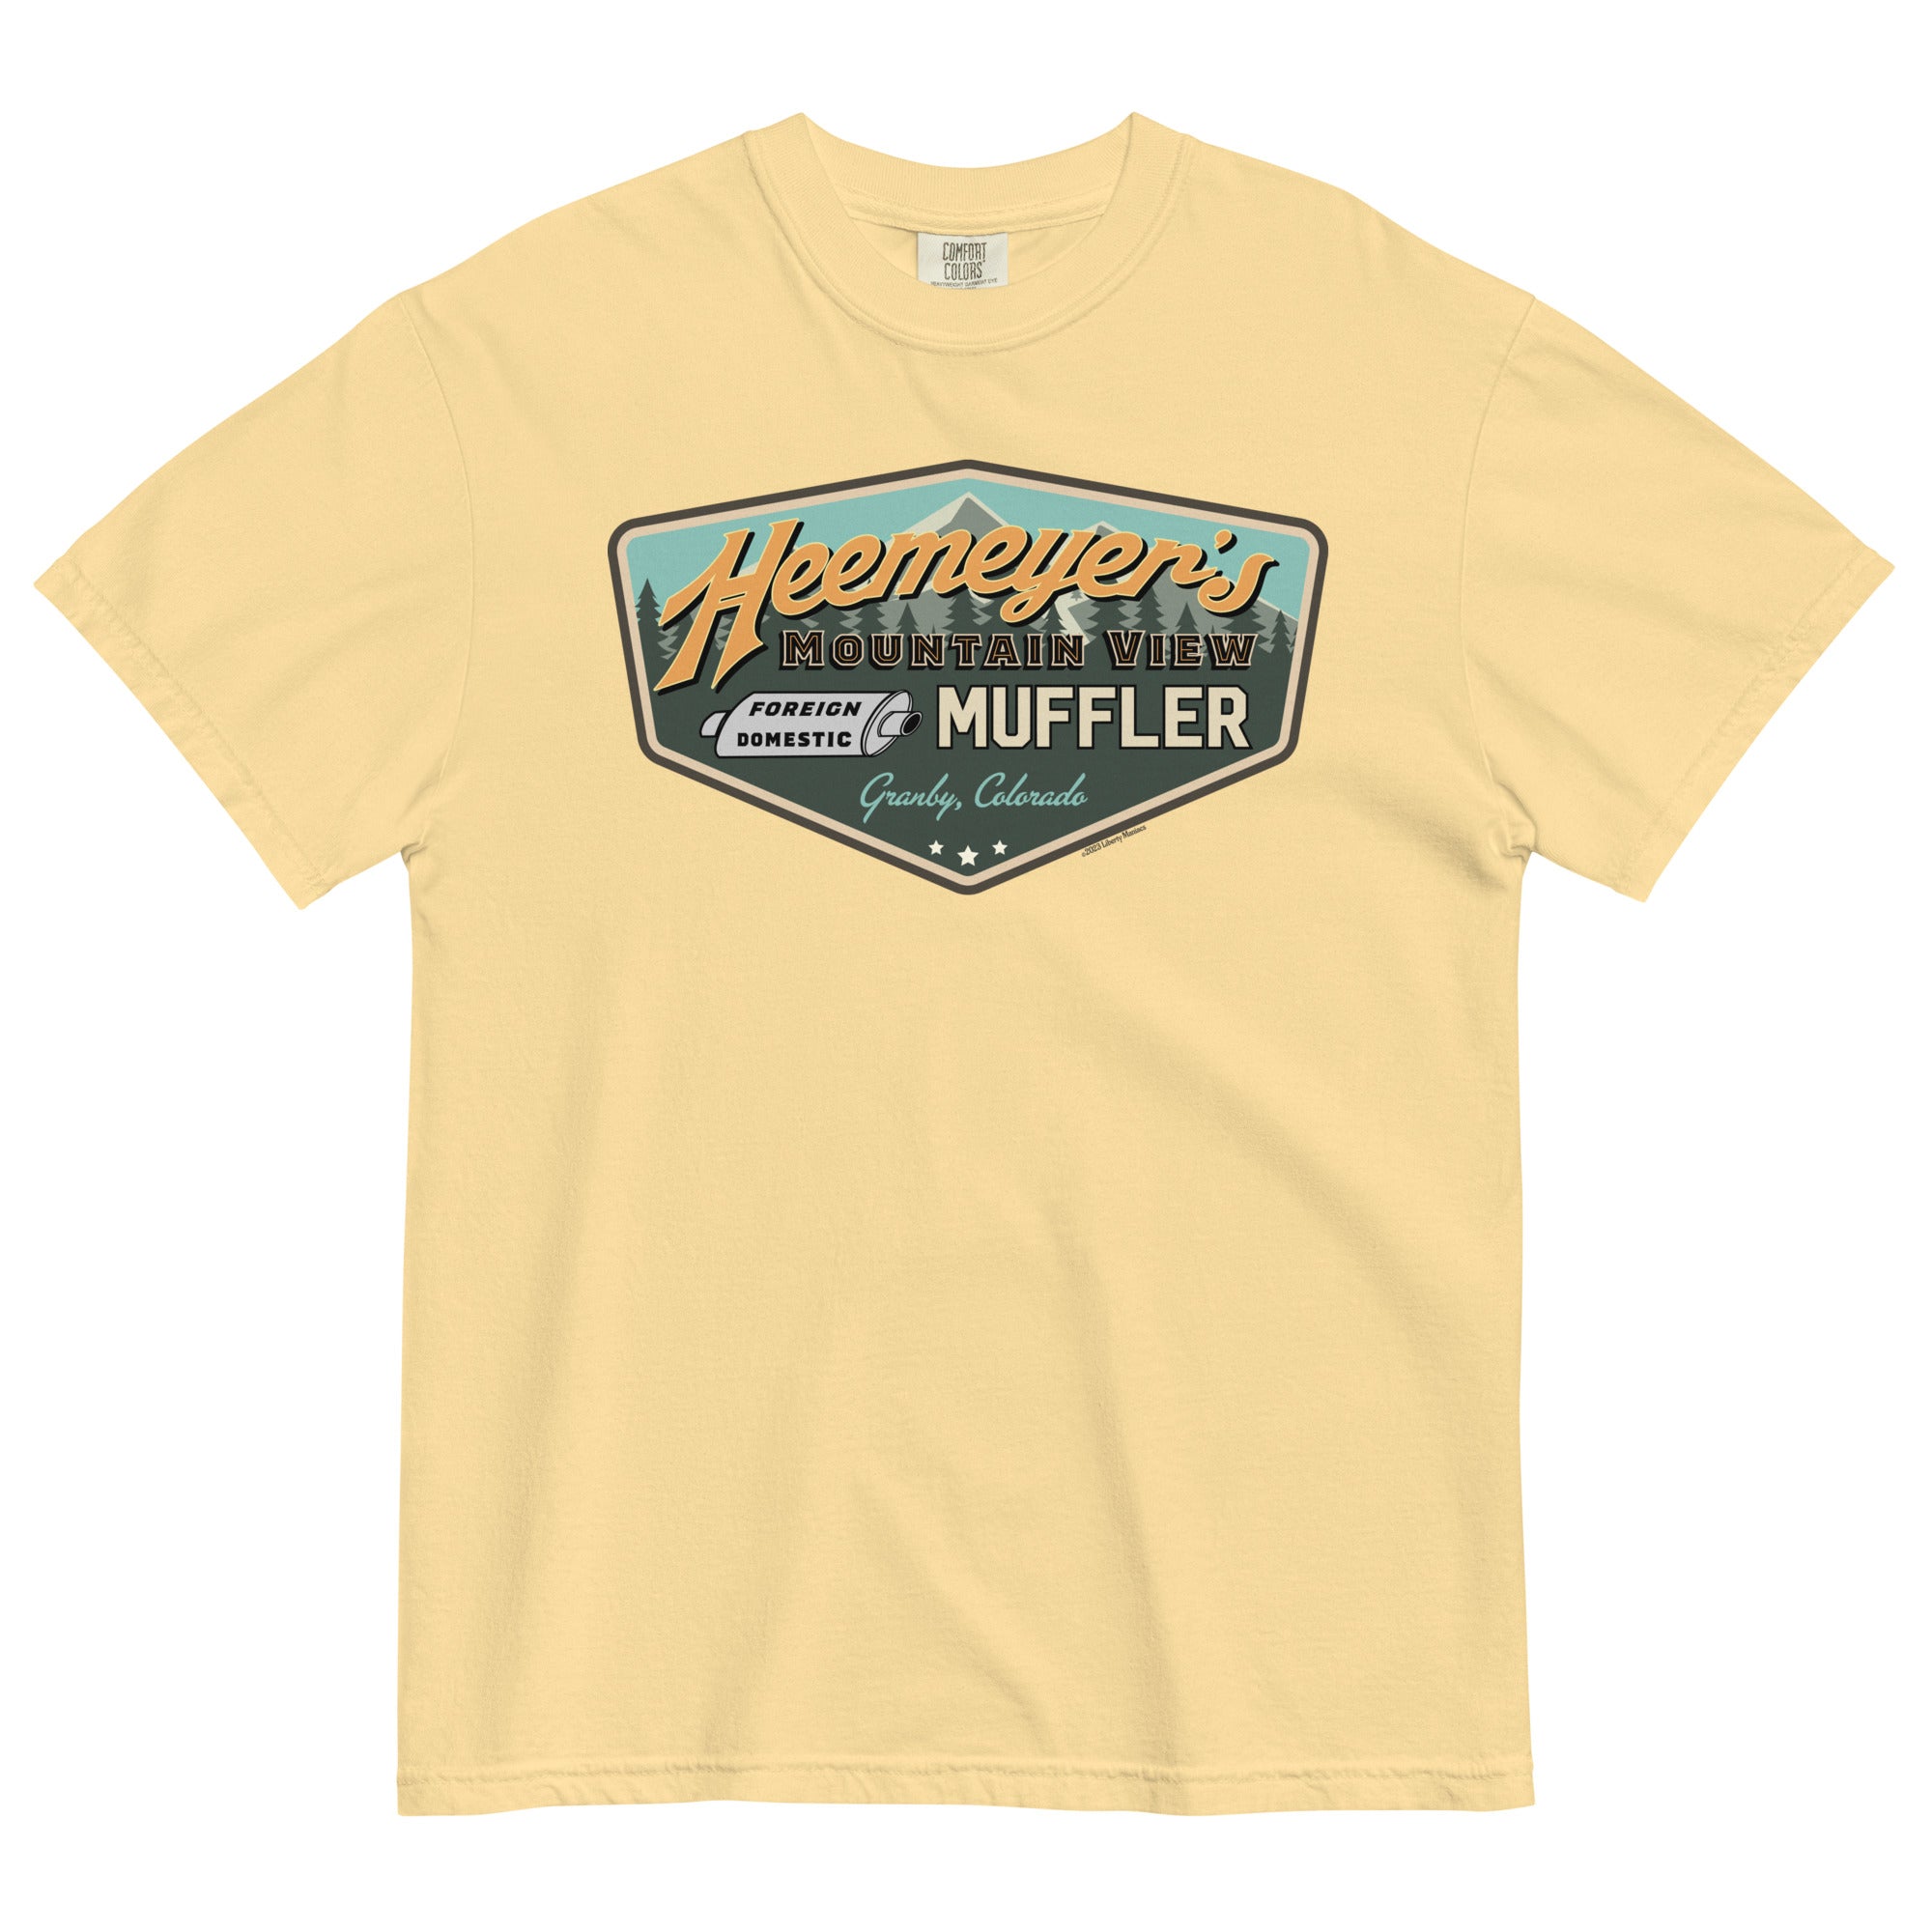 Heemeyer's Mountain View Muffler Garment-Dyed Heavyweight T-Shirt